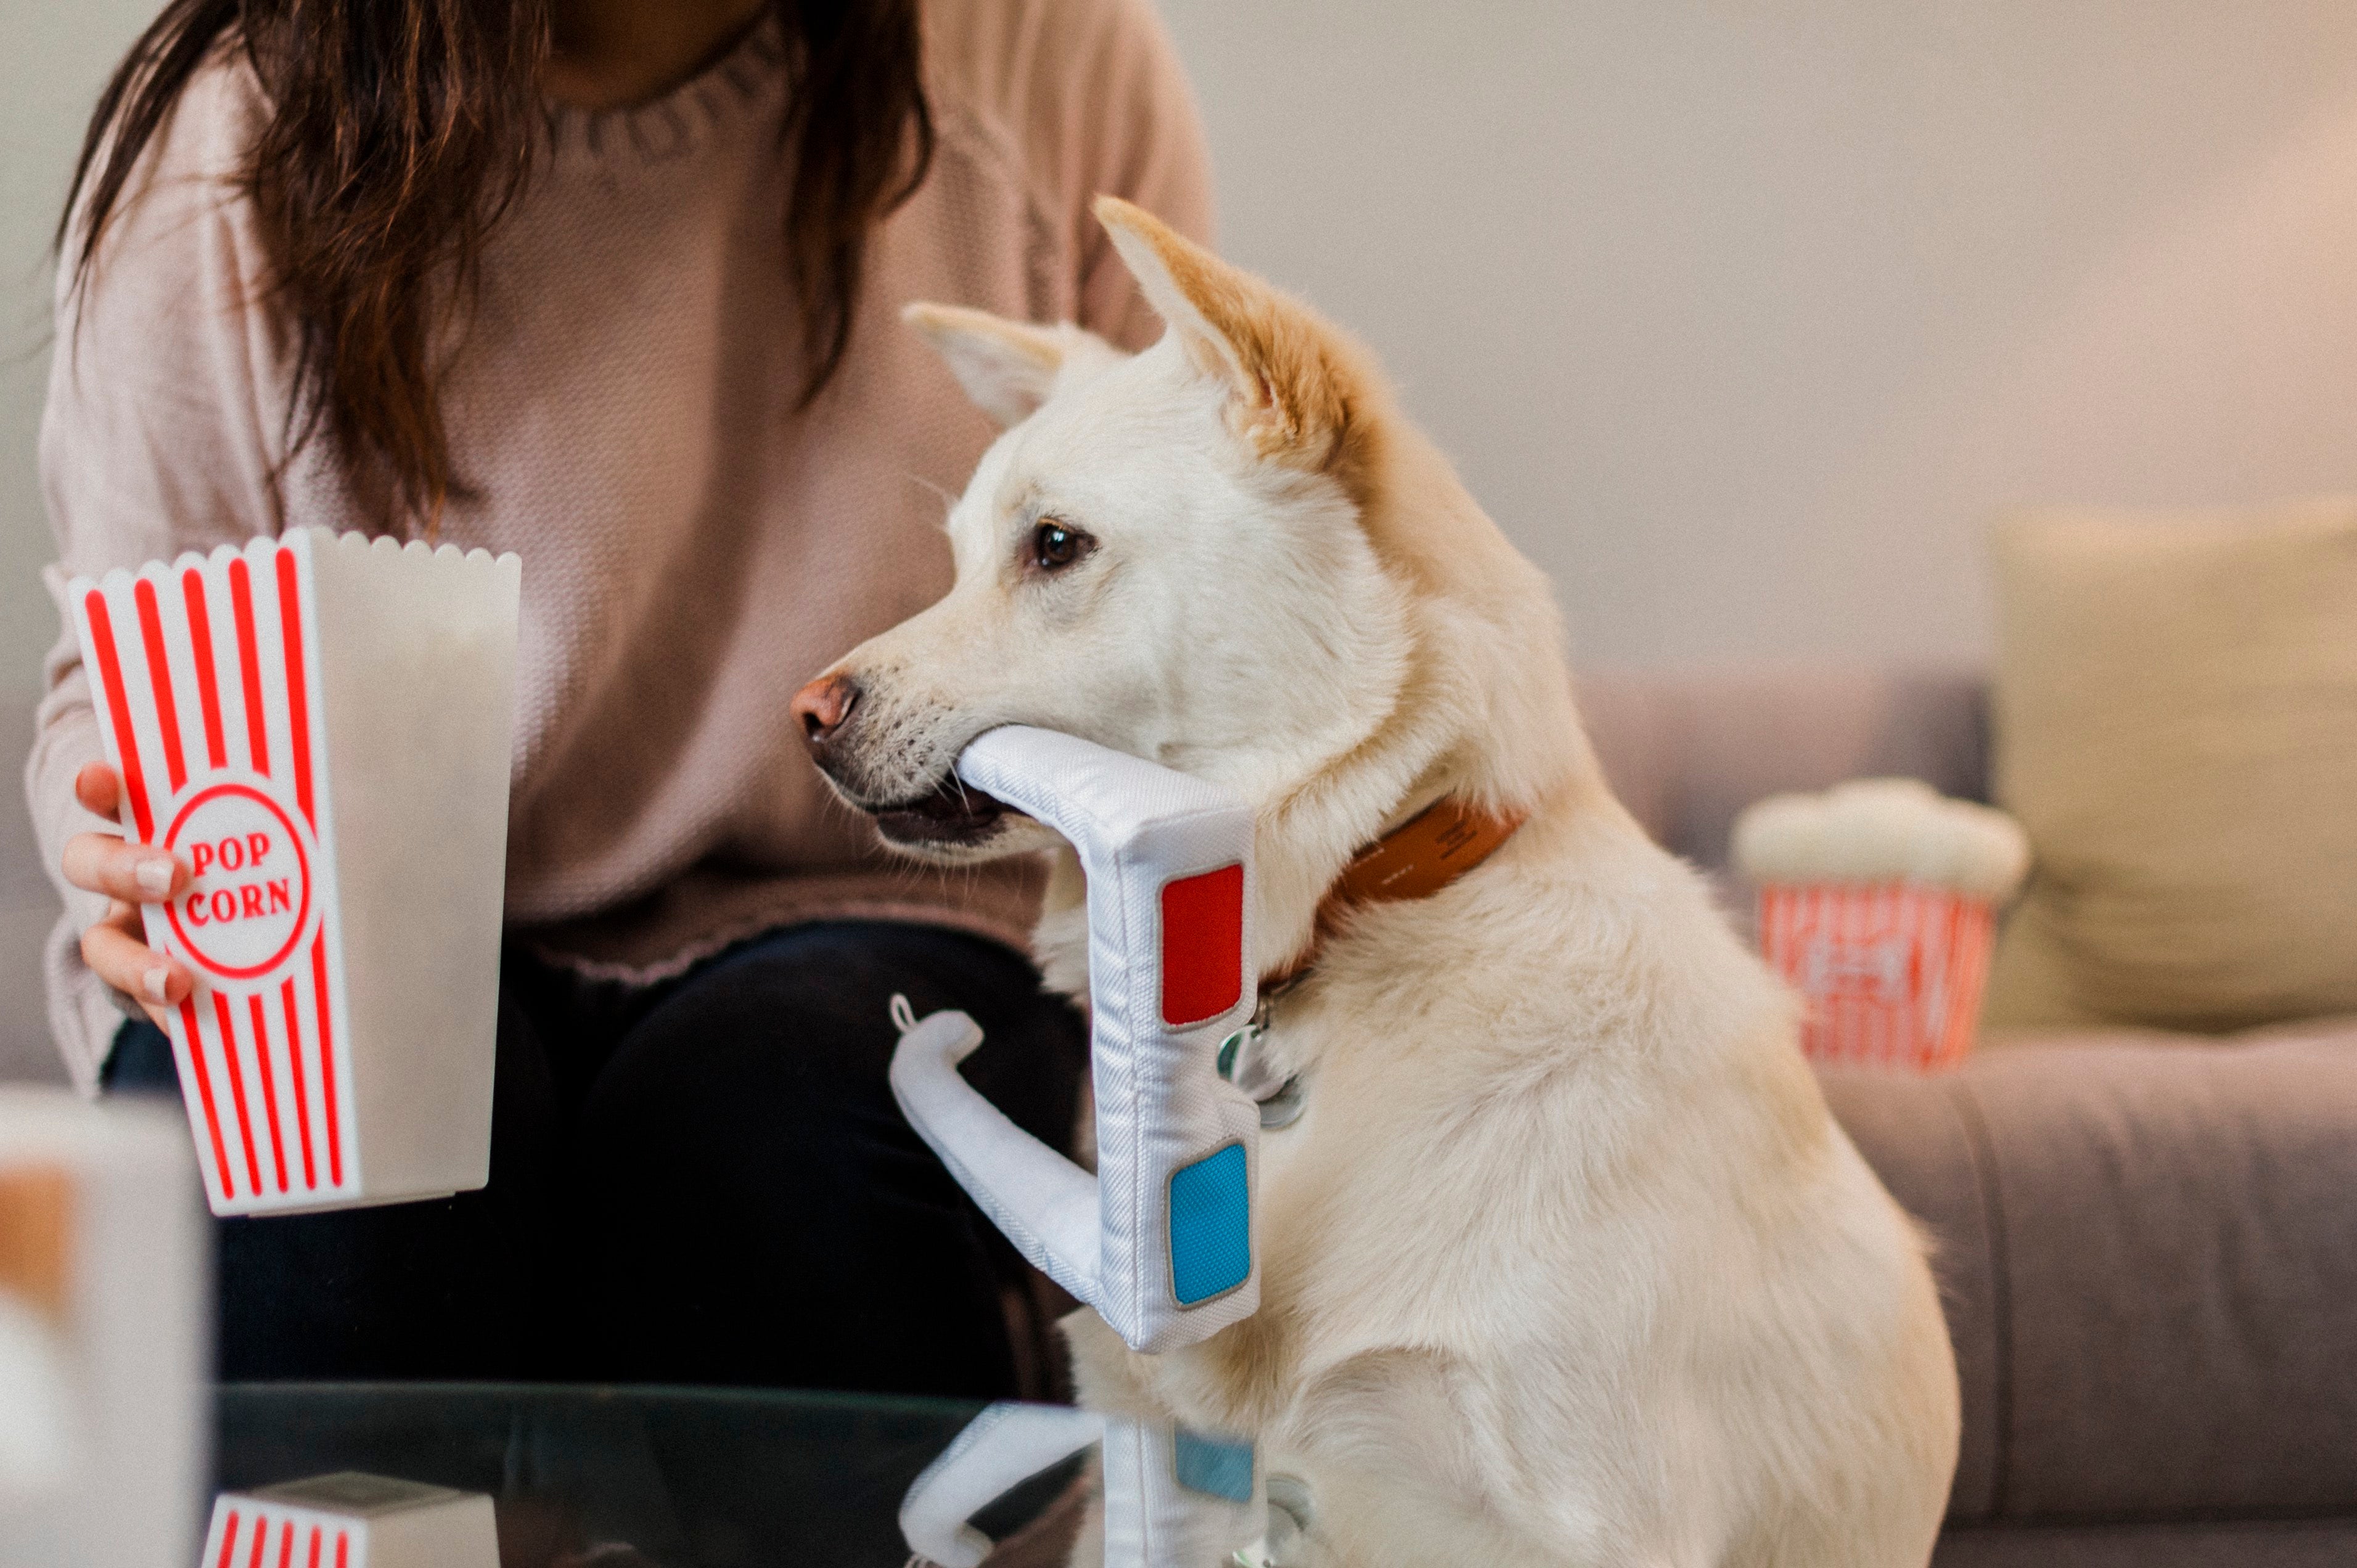 Hollywoof Cinema Squeaky Plush Dog toys, 3-Dog Glasses